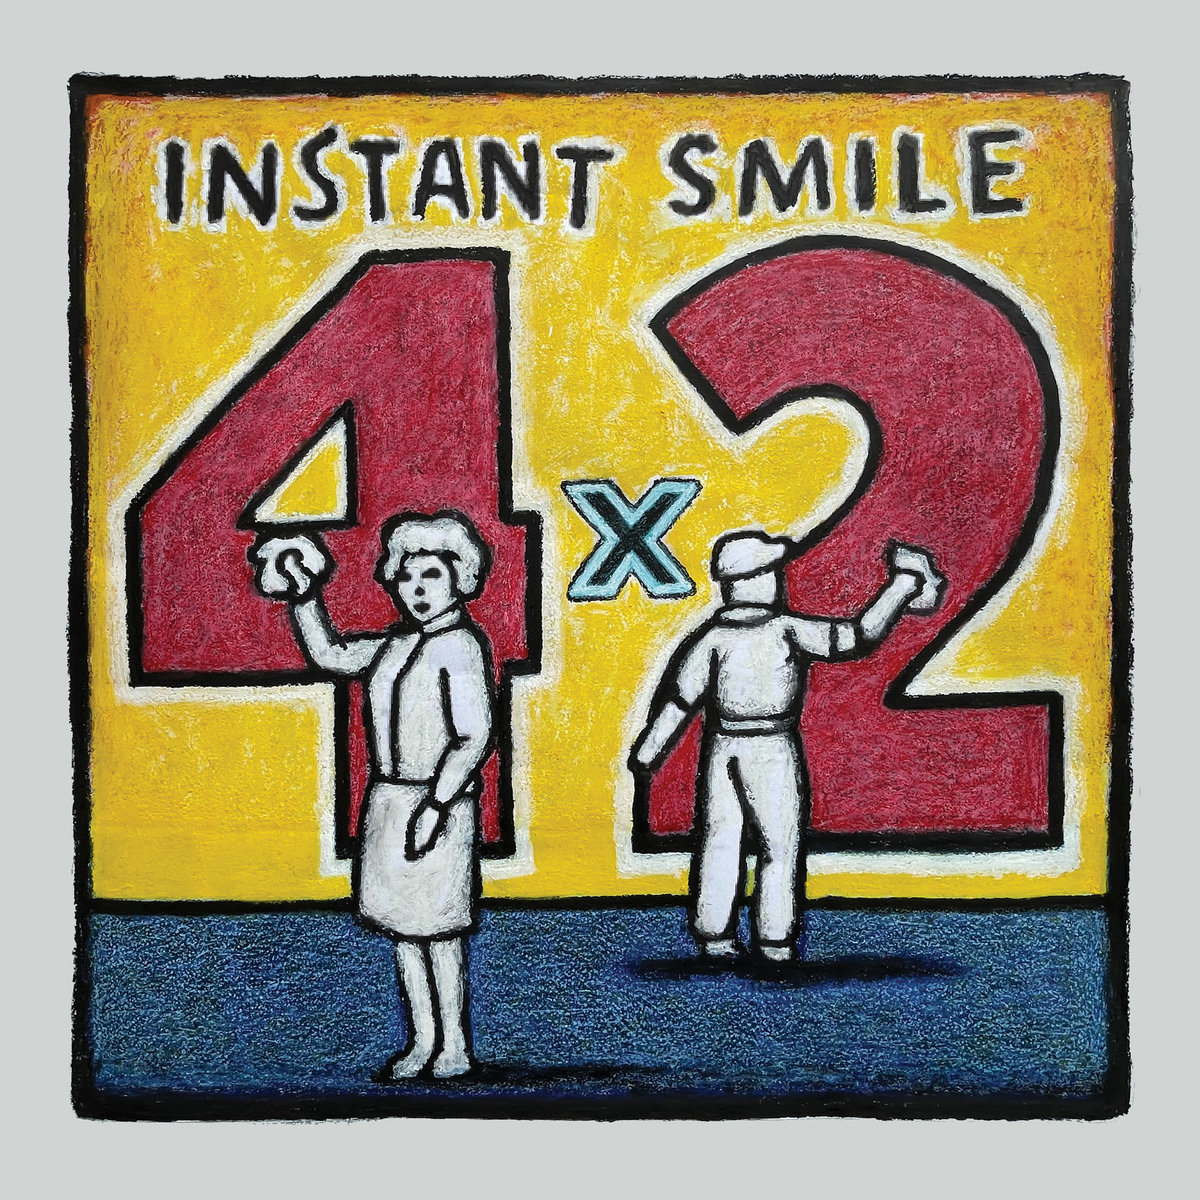 Instant Smile ‘4 x 2’ album artwork